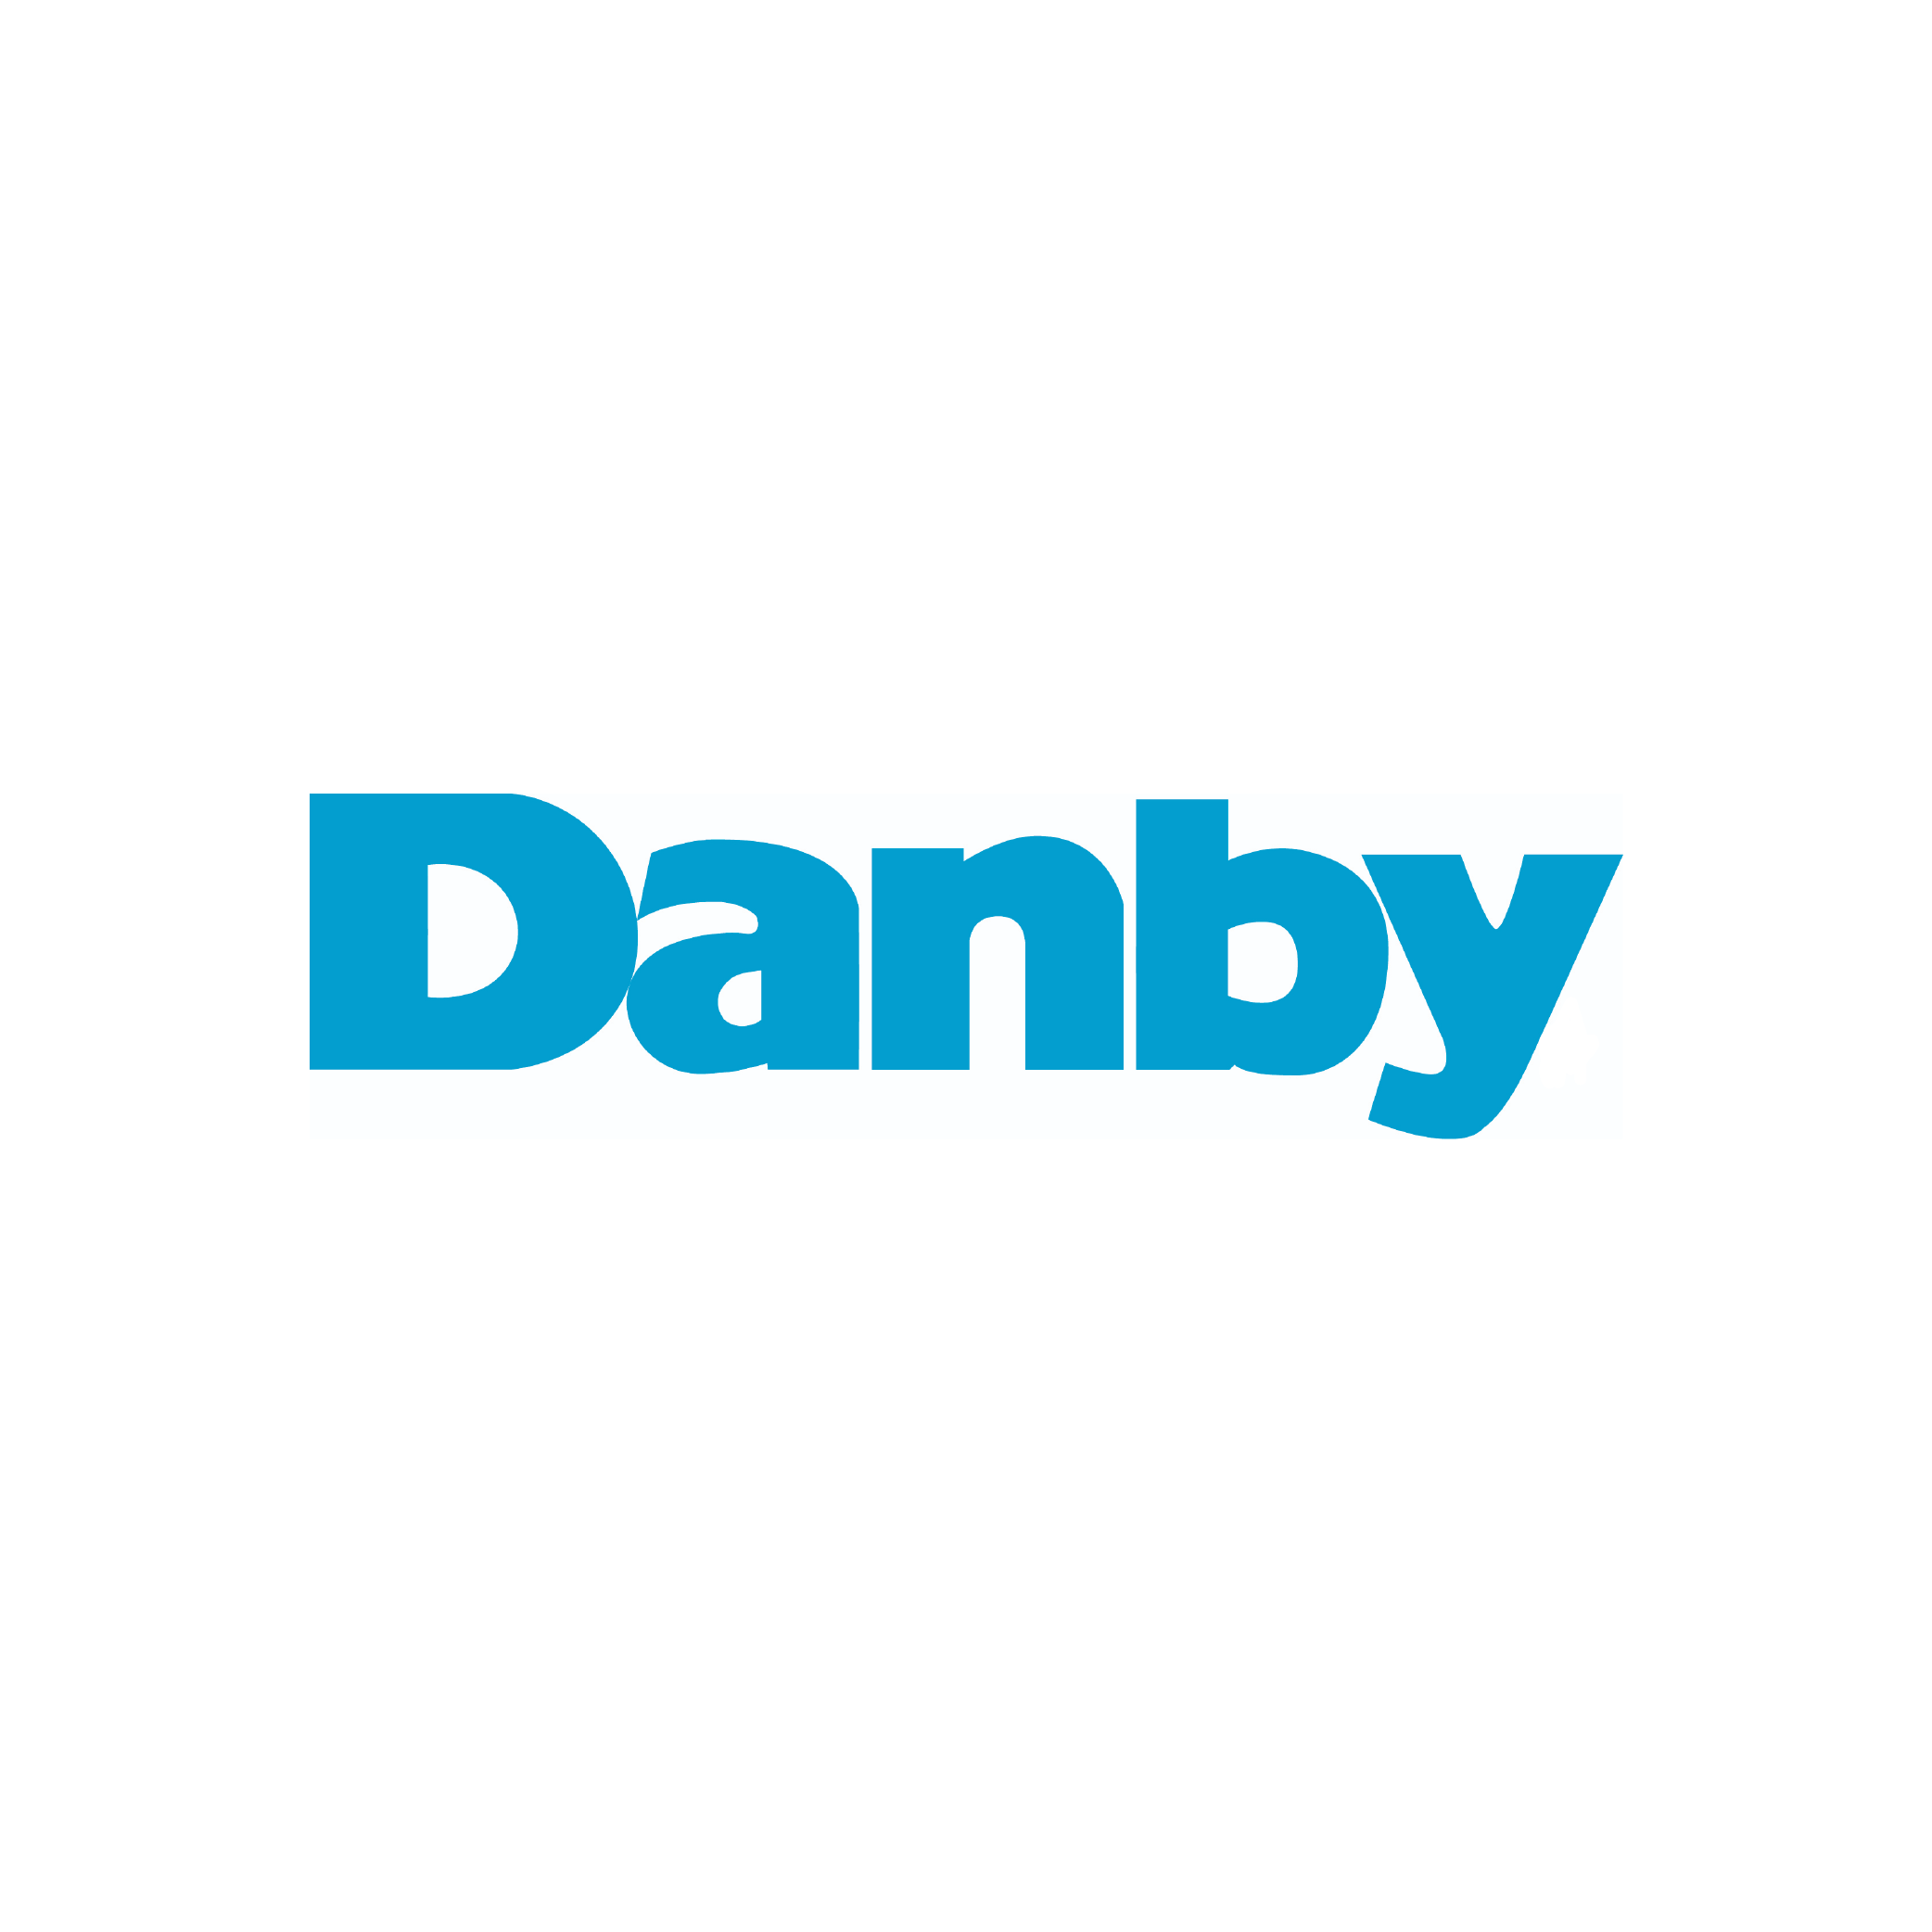  Danby Appliances Logo 